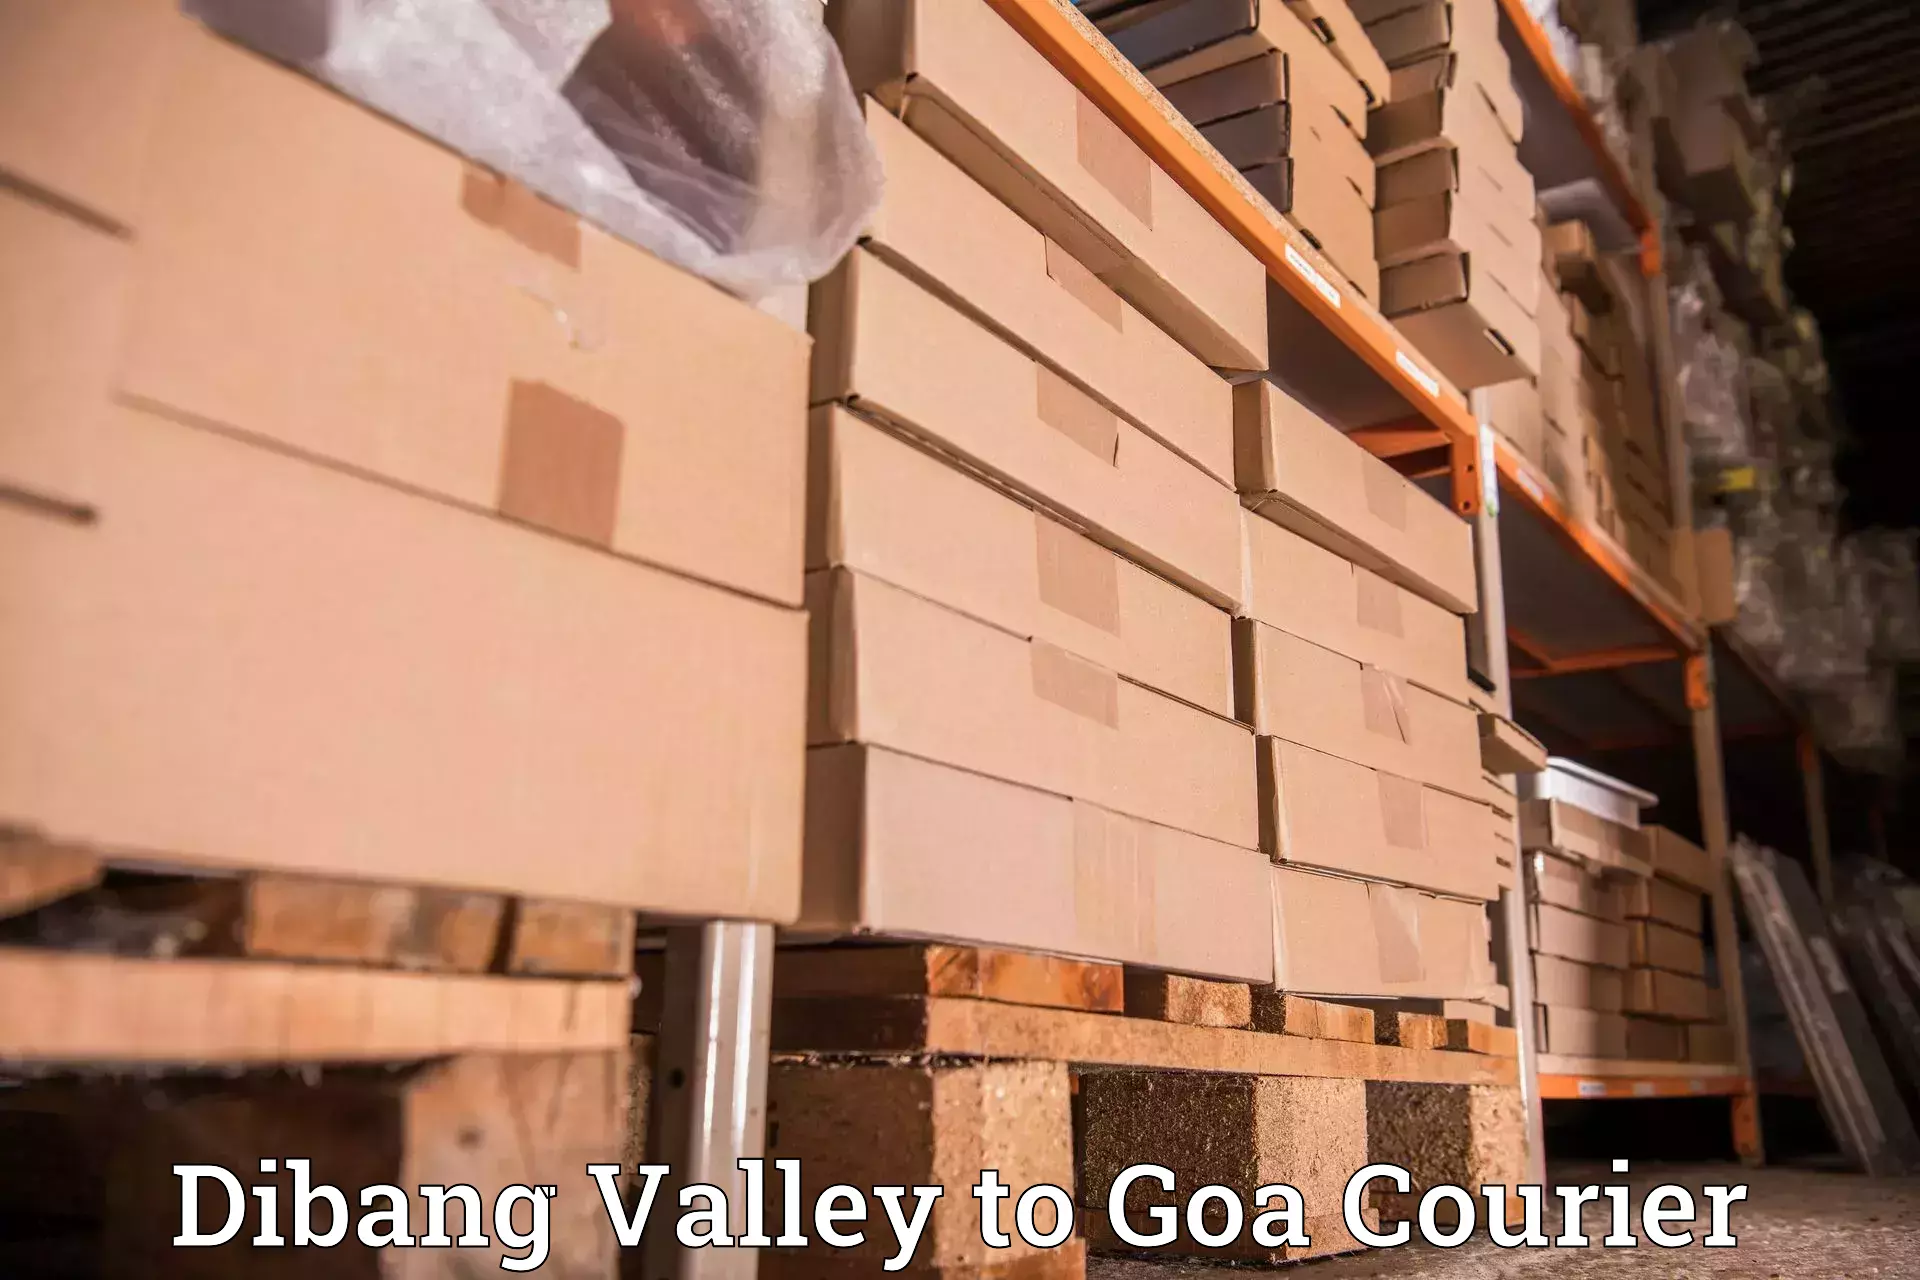 Global courier networks Dibang Valley to Sanvordem